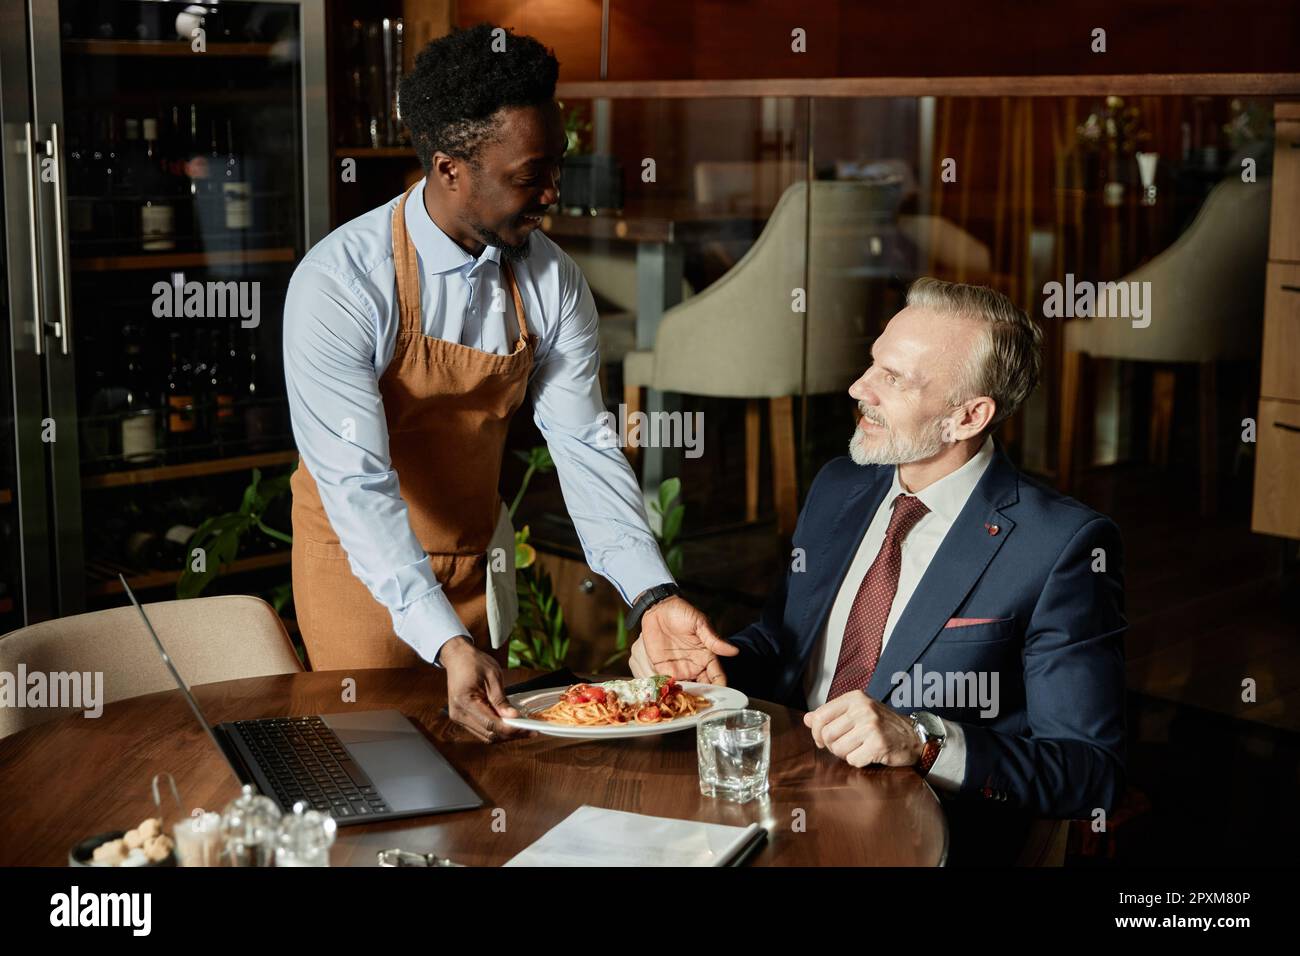 Ein afroamerikanischer Kellner serviert Geschäftsleuten mittags im Restaurant eine Mahlzeit Stockfoto